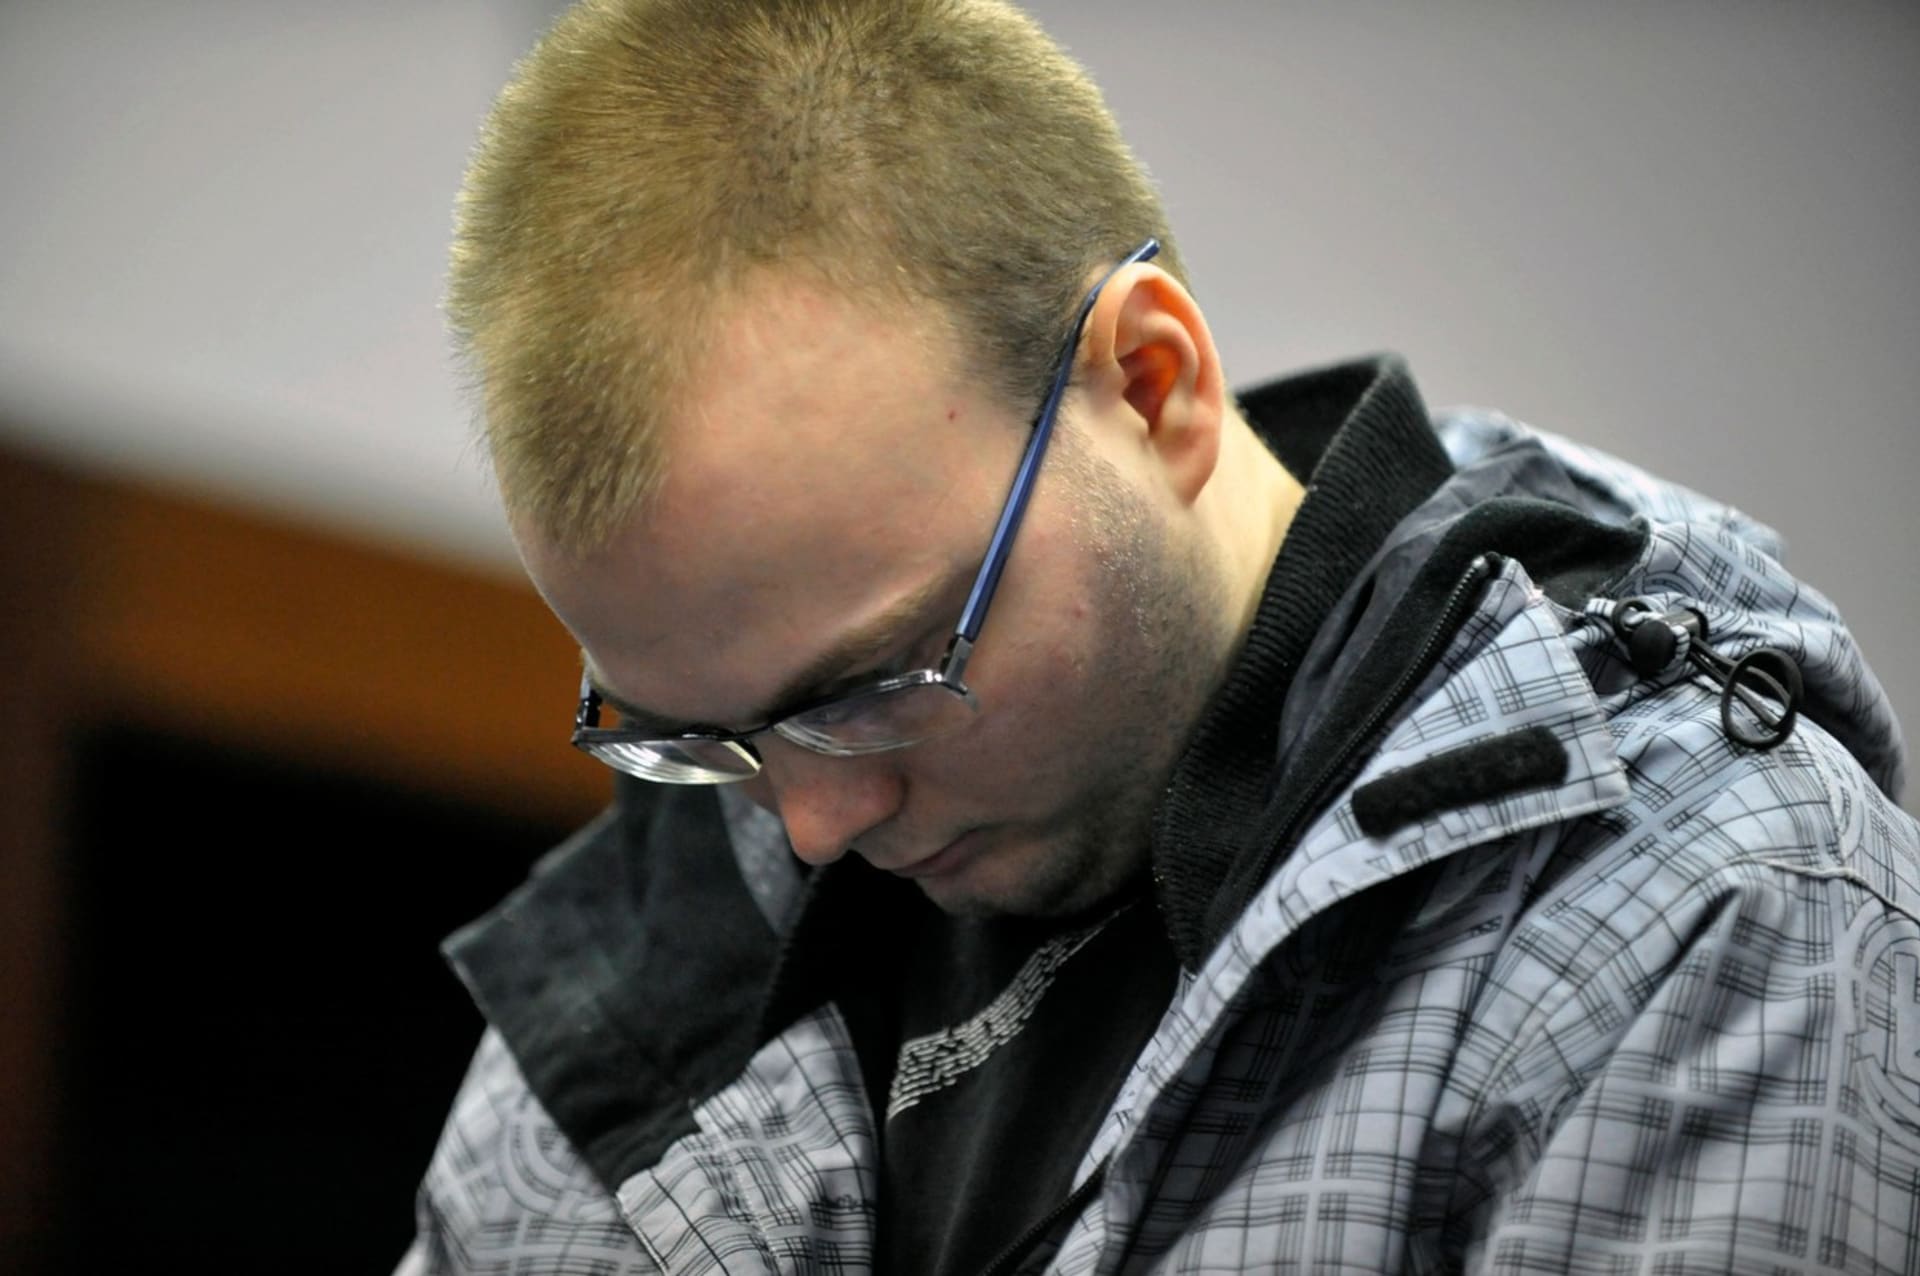 Za vraždu milenky dostal Lukáš Kopecký výjimečný trest, za mřížemi stráví 25 let. (25. 11. 2011)